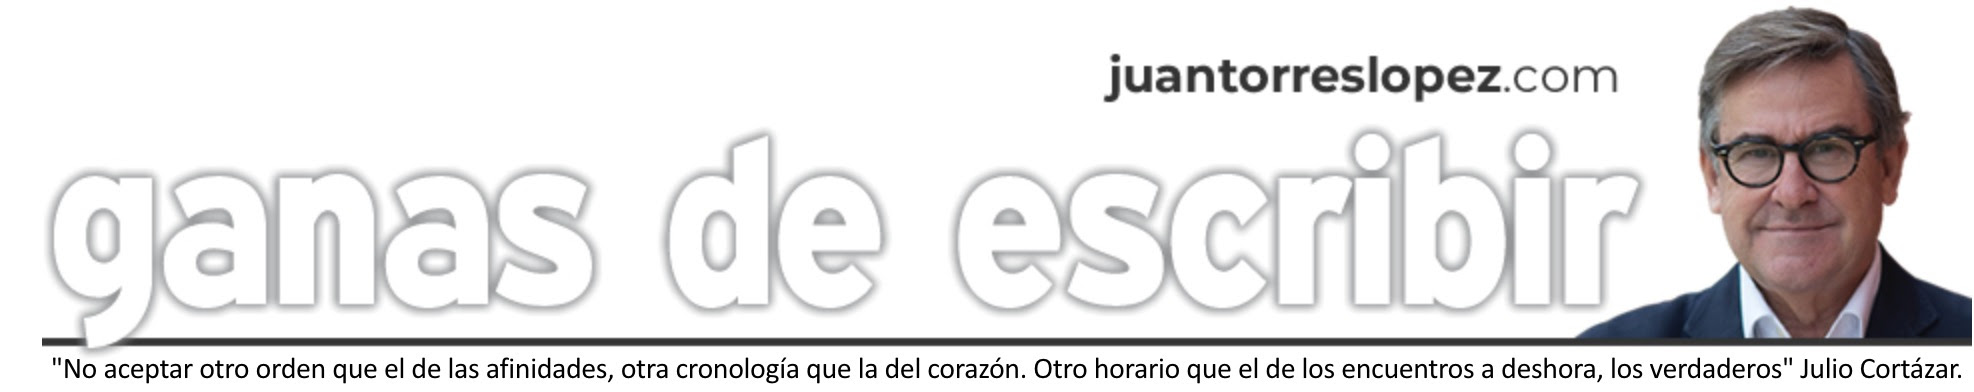 www.juantorreslopez.com